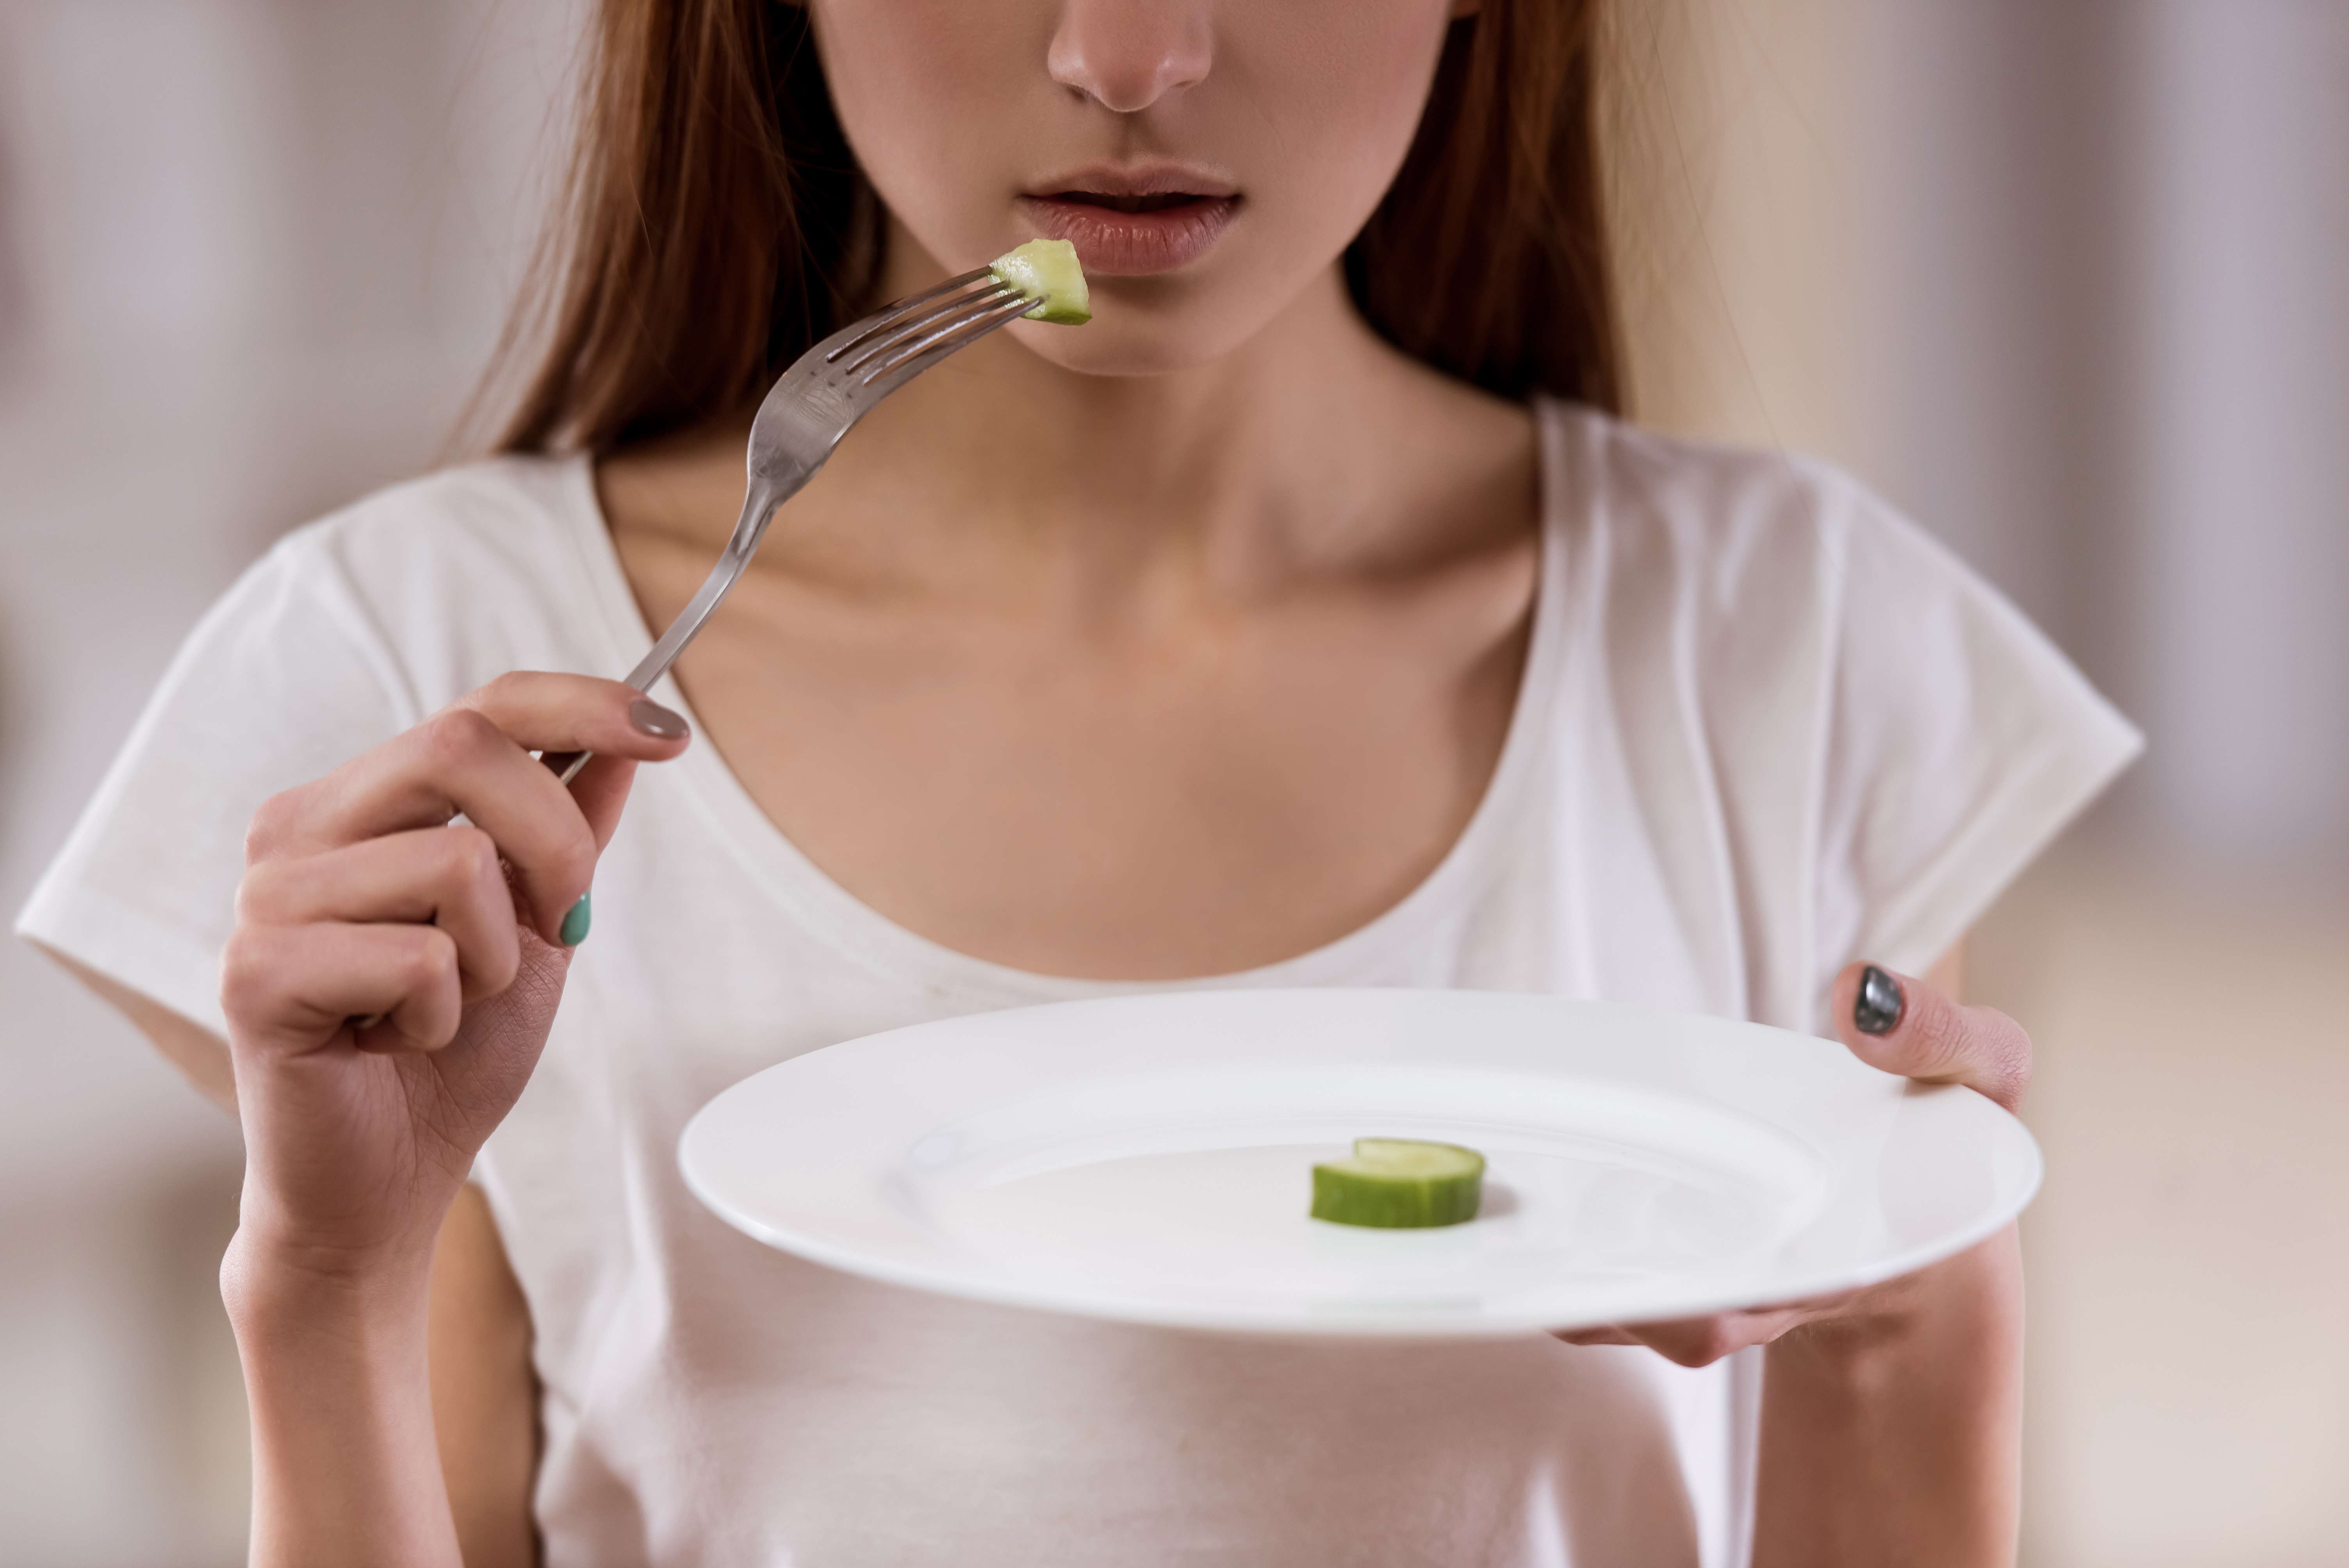 Około 8% społeczeństwa cierpi na anoreksję lub bulimię